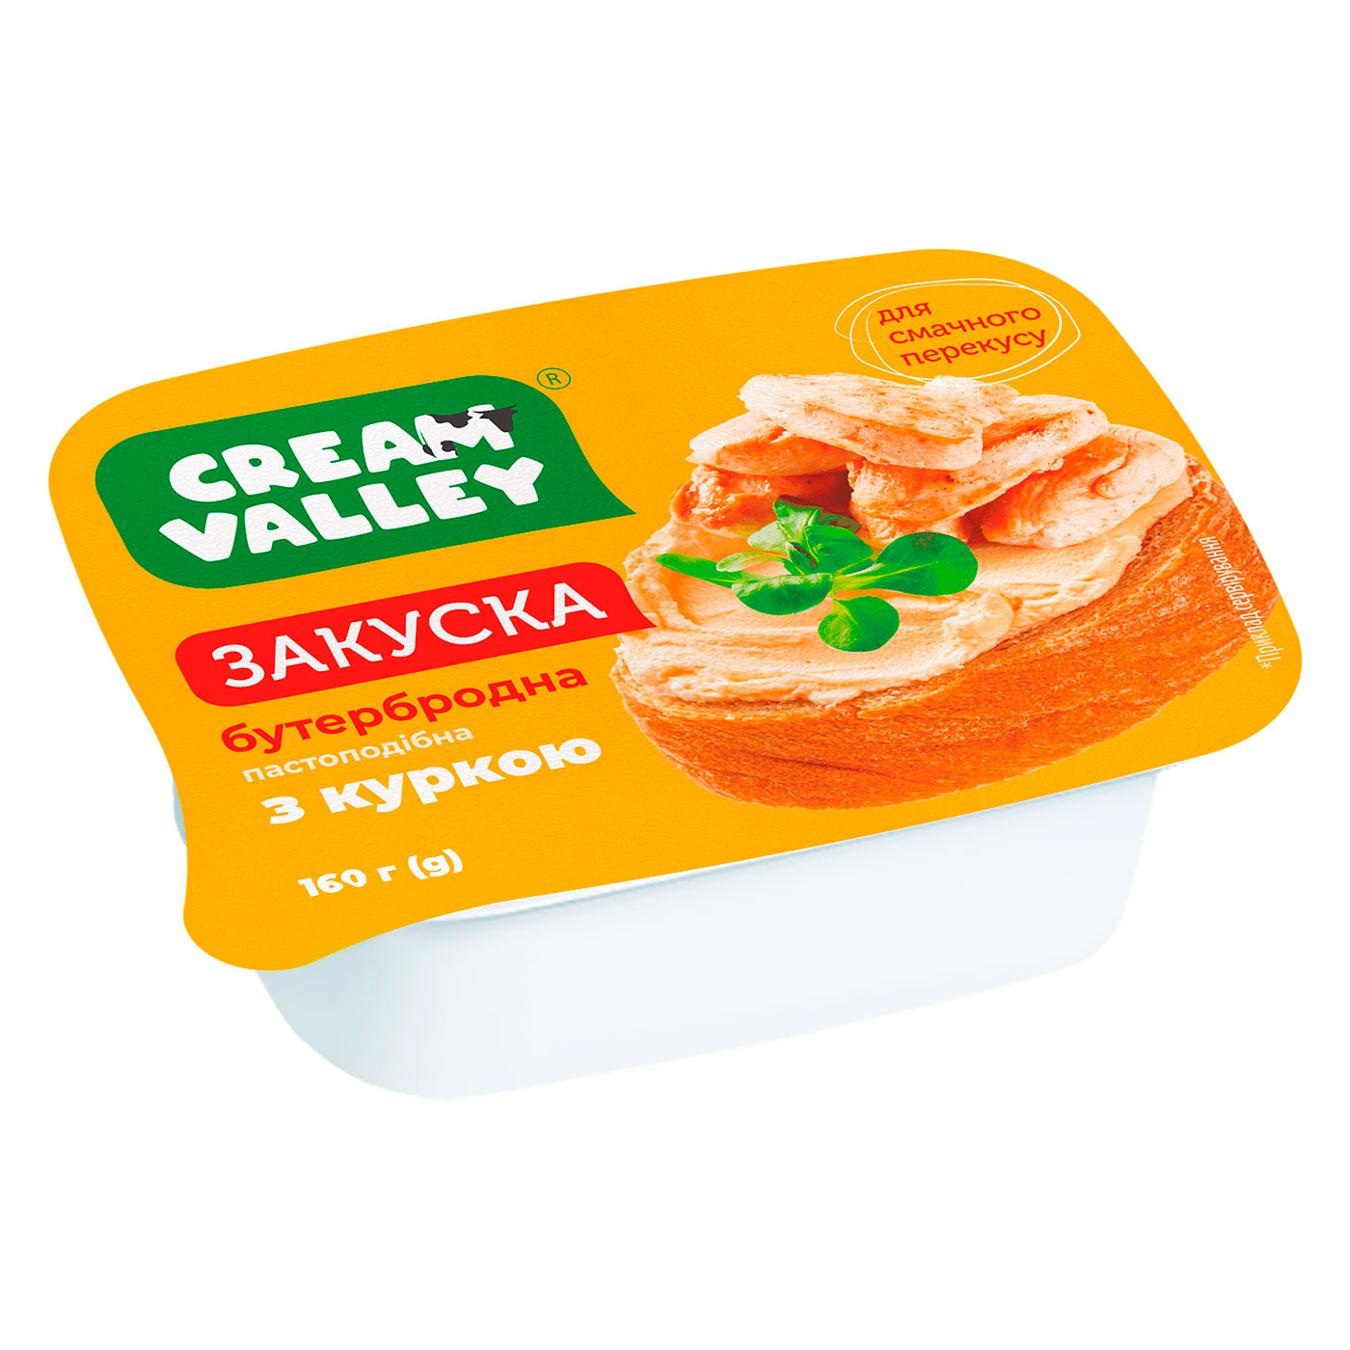 Закуска Cream Valley пастоподібна бутербродна з куркою 160г